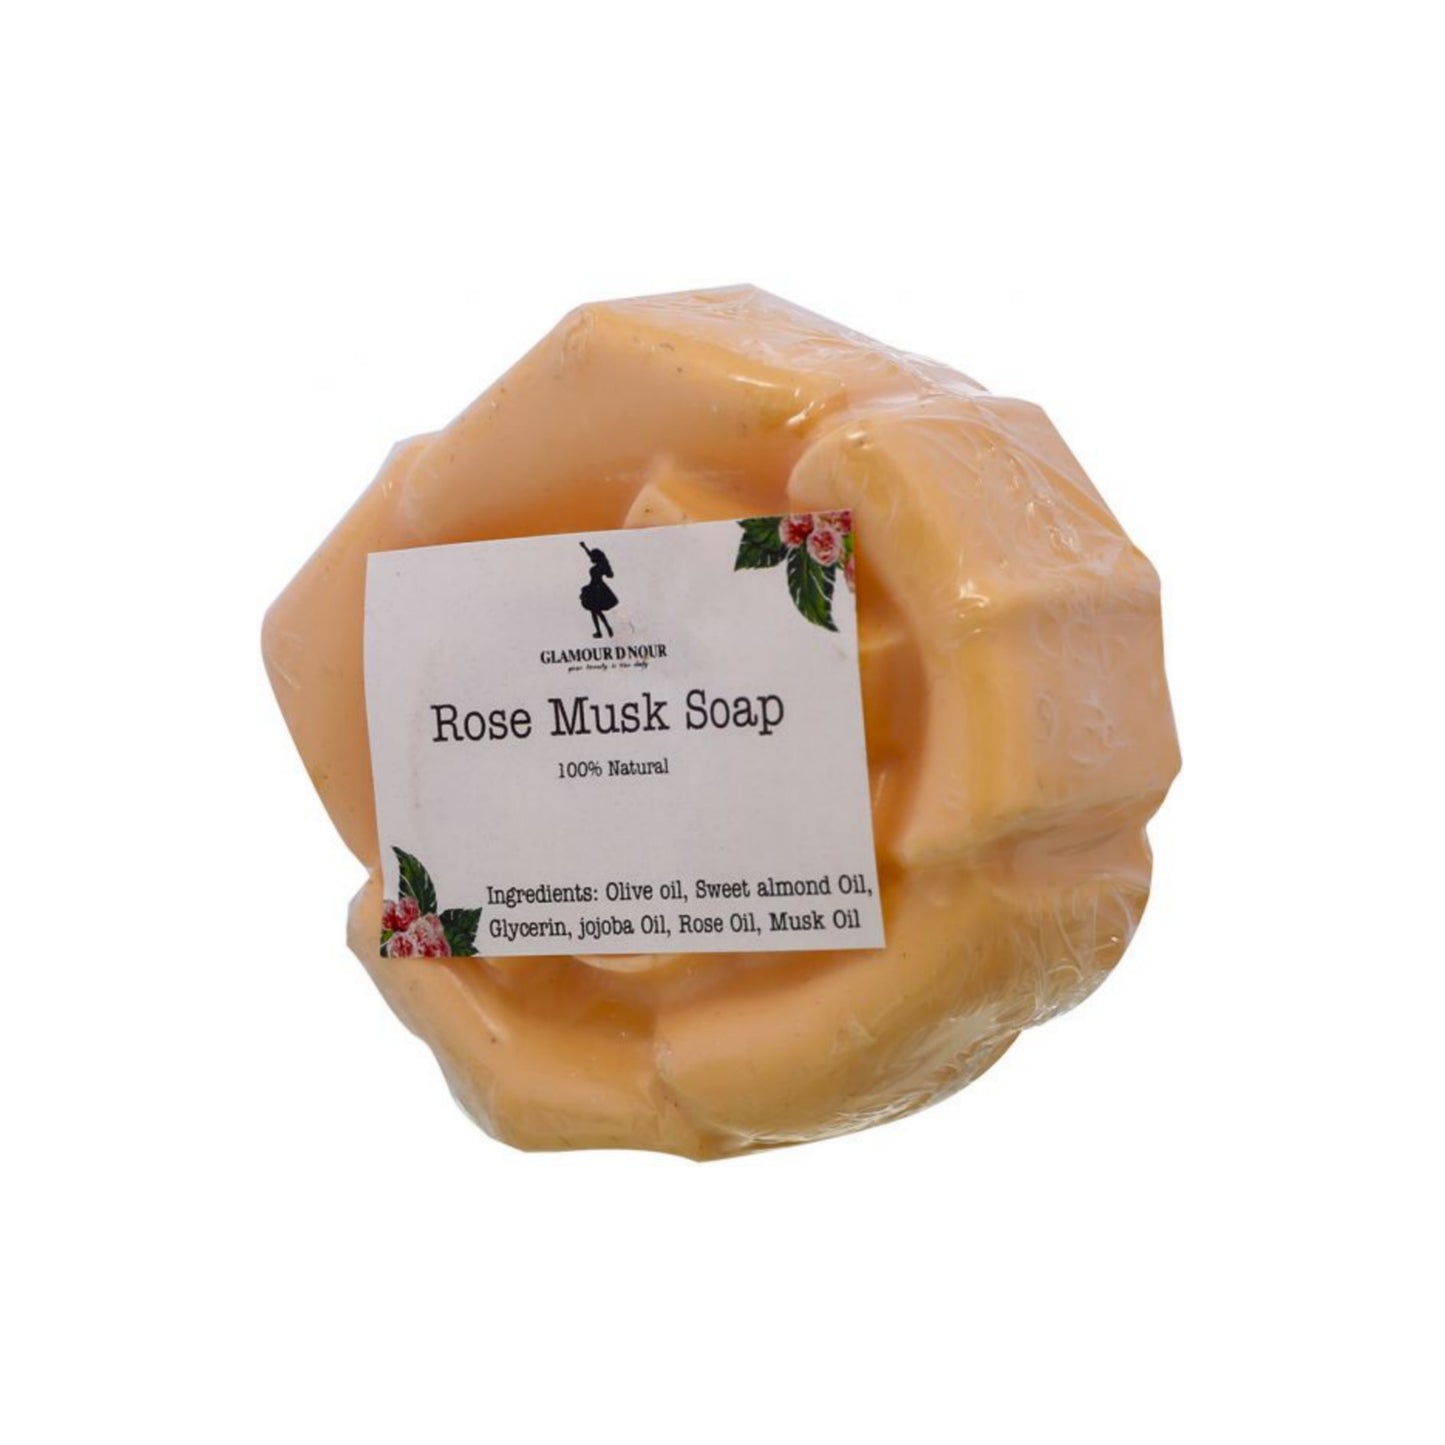 Rose Musk Soap